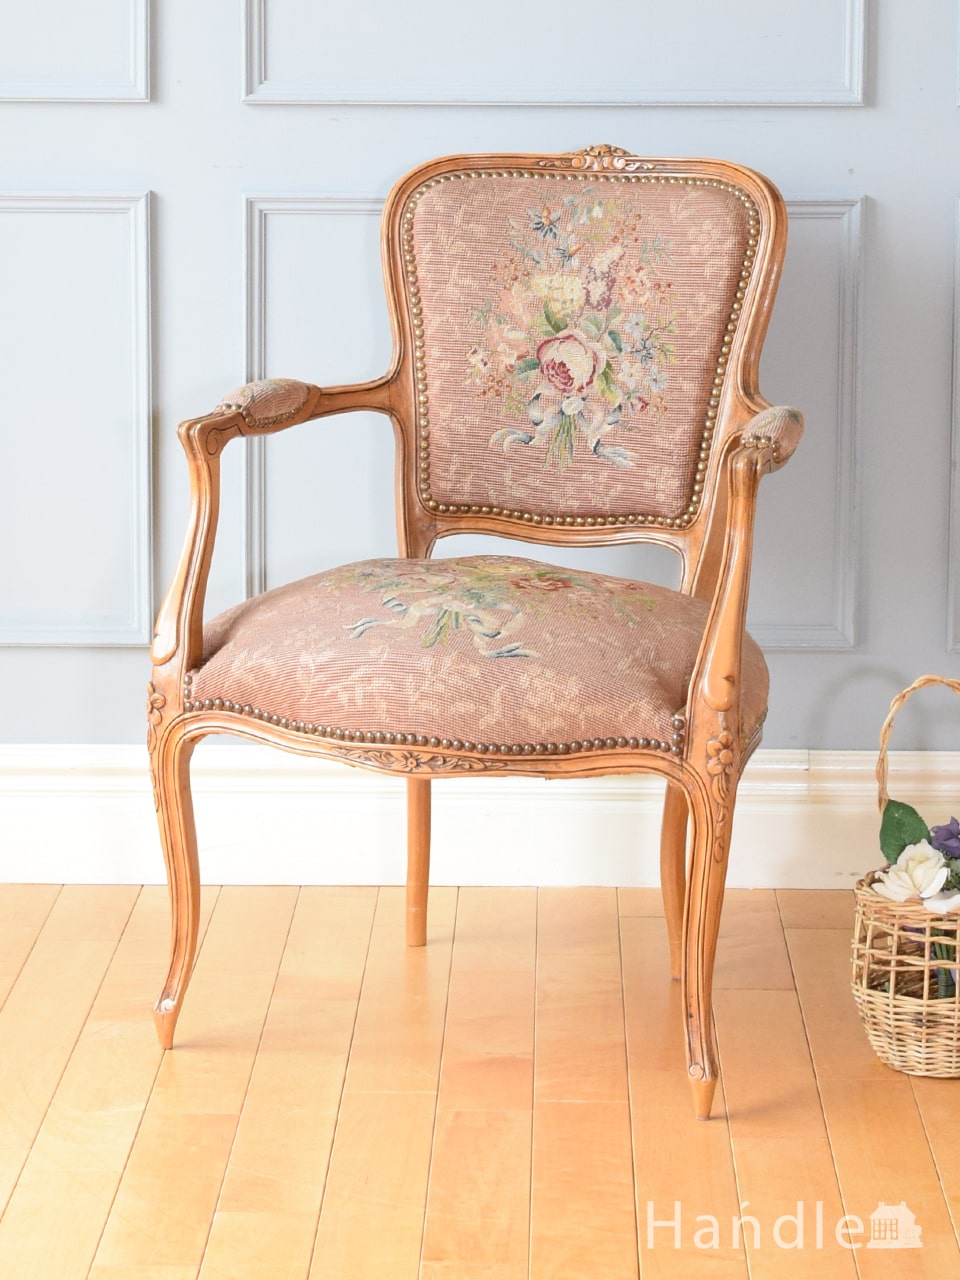 フランスアンティークのおしゃれな一人掛け椅子、お花の刺繍が華やかなプチポワンのパーソナルチェア (z-081-c)